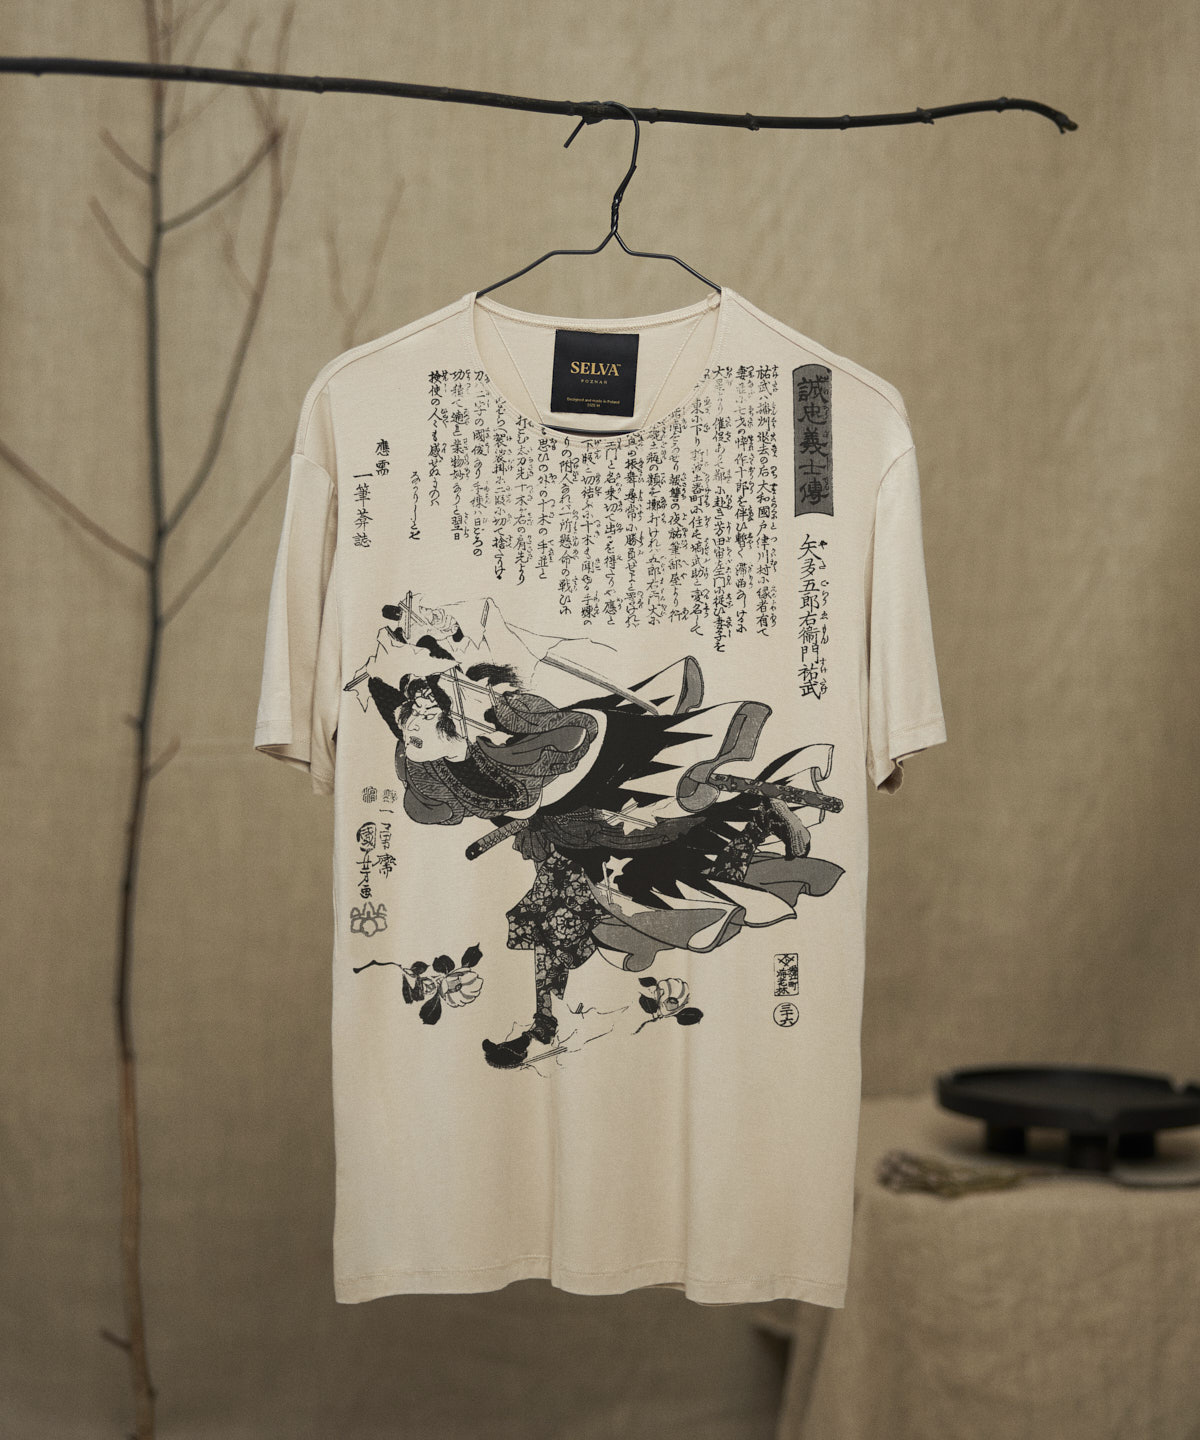 Utagawa Kuniyoshi no.92 hummus t-shirt men